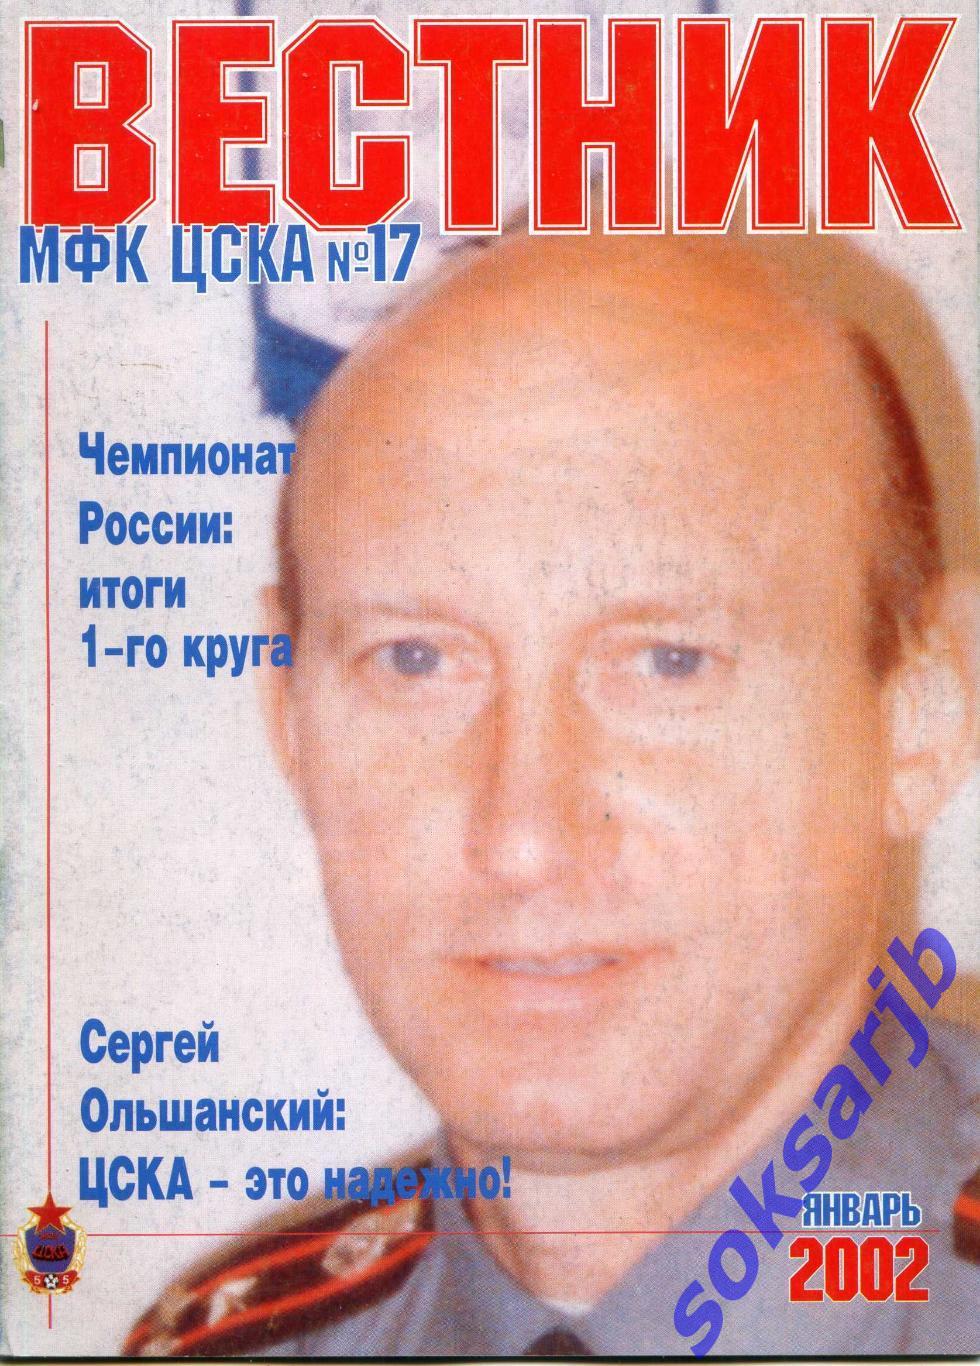 2002. МФК ЦСКА. Вестник №17. январь.